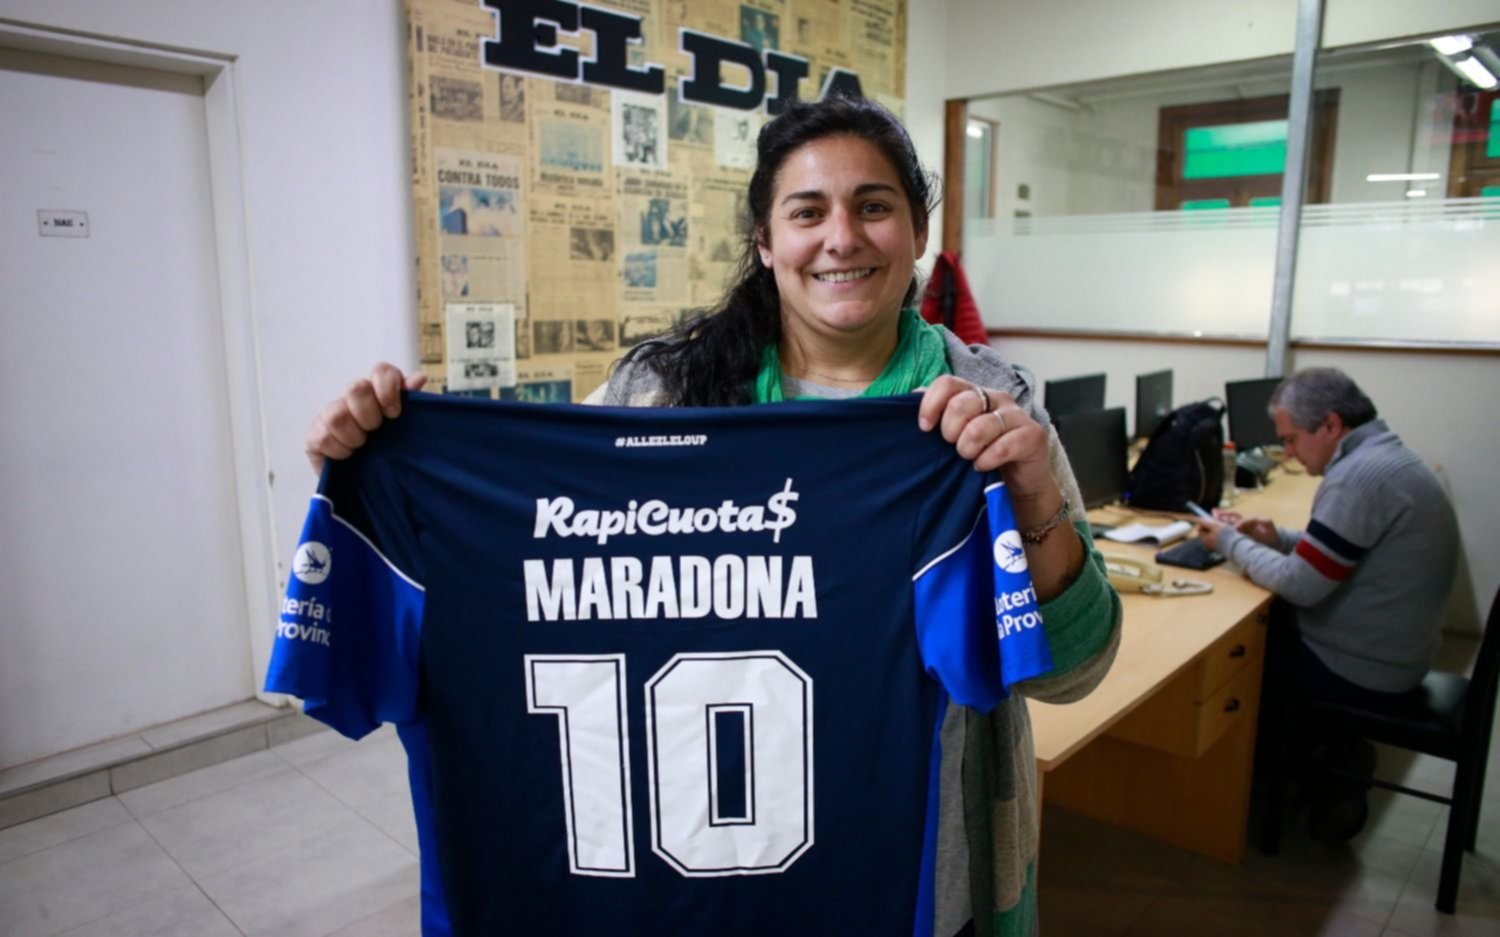 La ganadora de la camiseta de Maradona que sorteó de EL DIA: "Estoy con mucha ilusión"